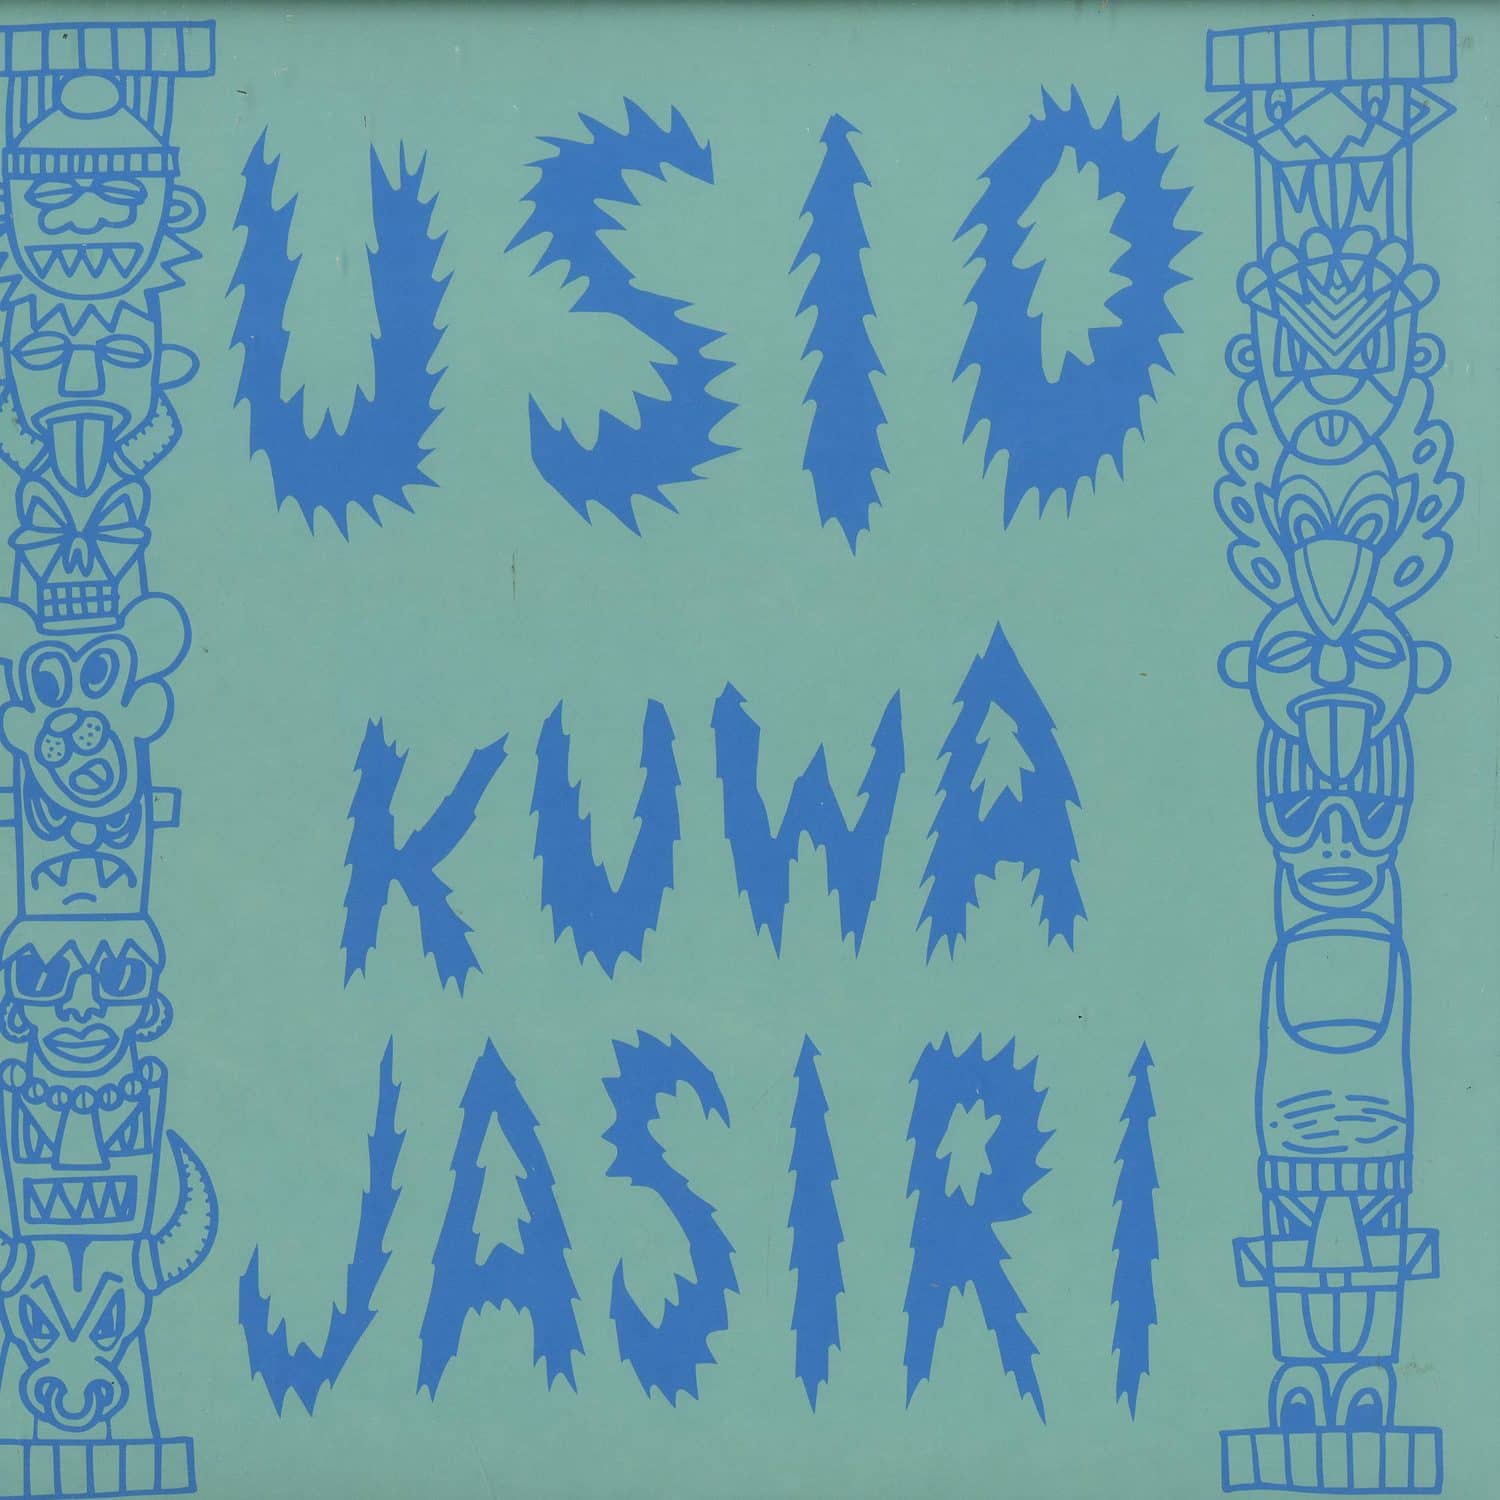 Usio - KUWA JASIRI